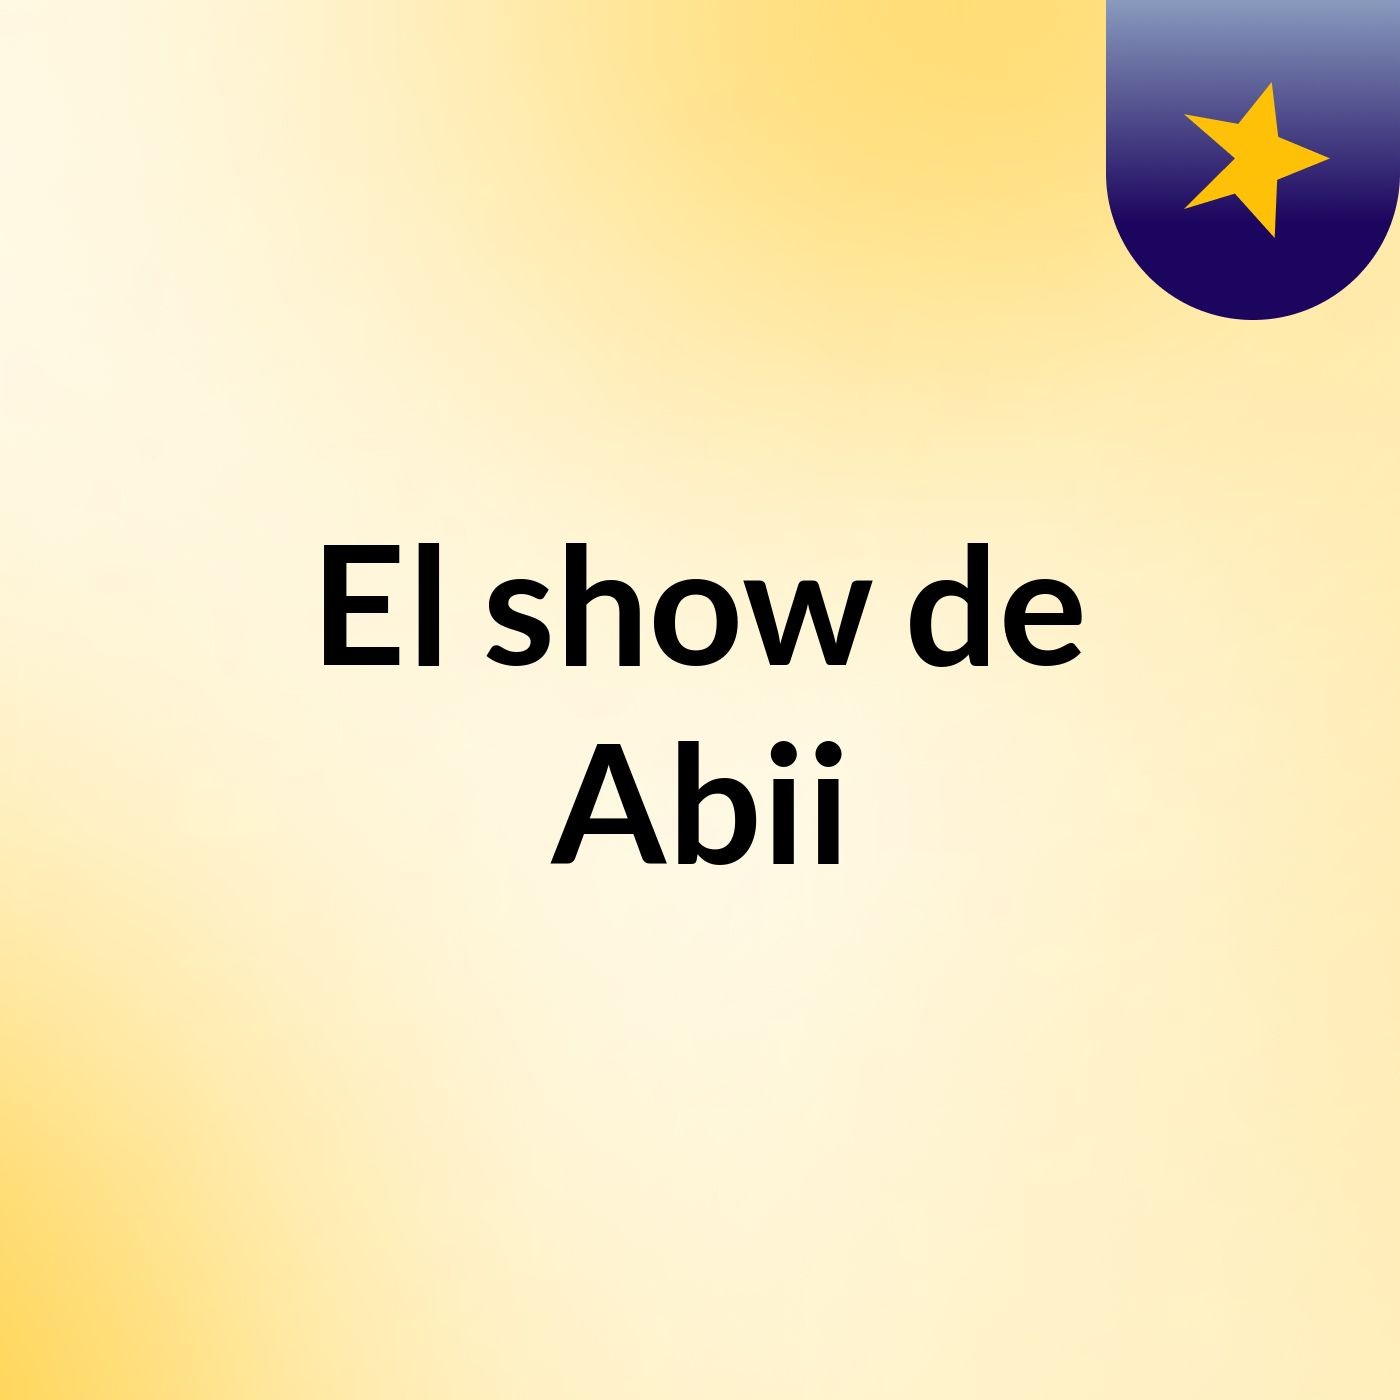 El show de Abii